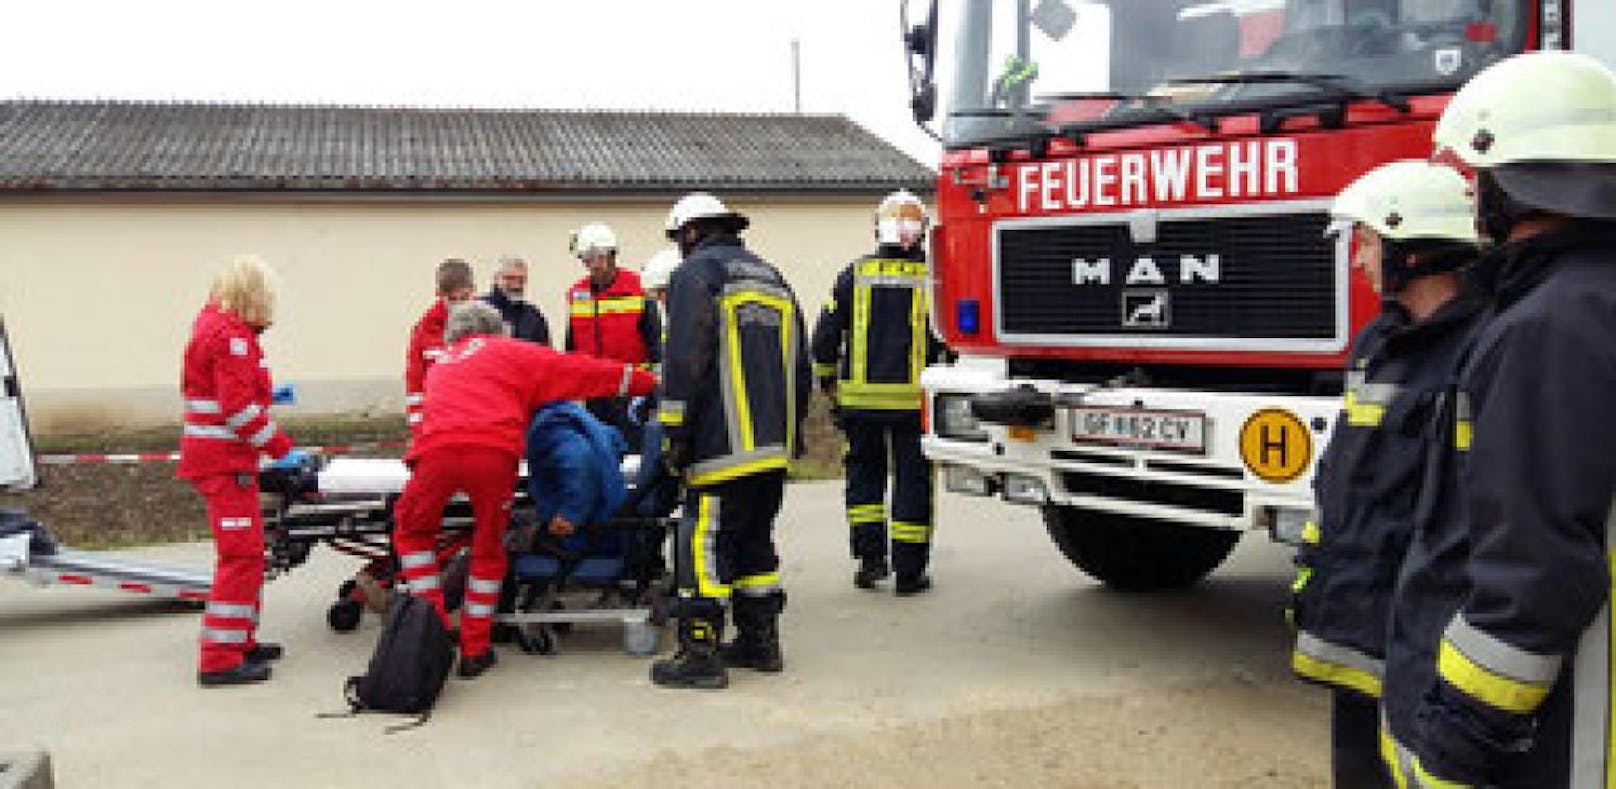 Die Rettungskräfte brachten den Verletzten von der Baustelle und transportierten ihn ins Spital.